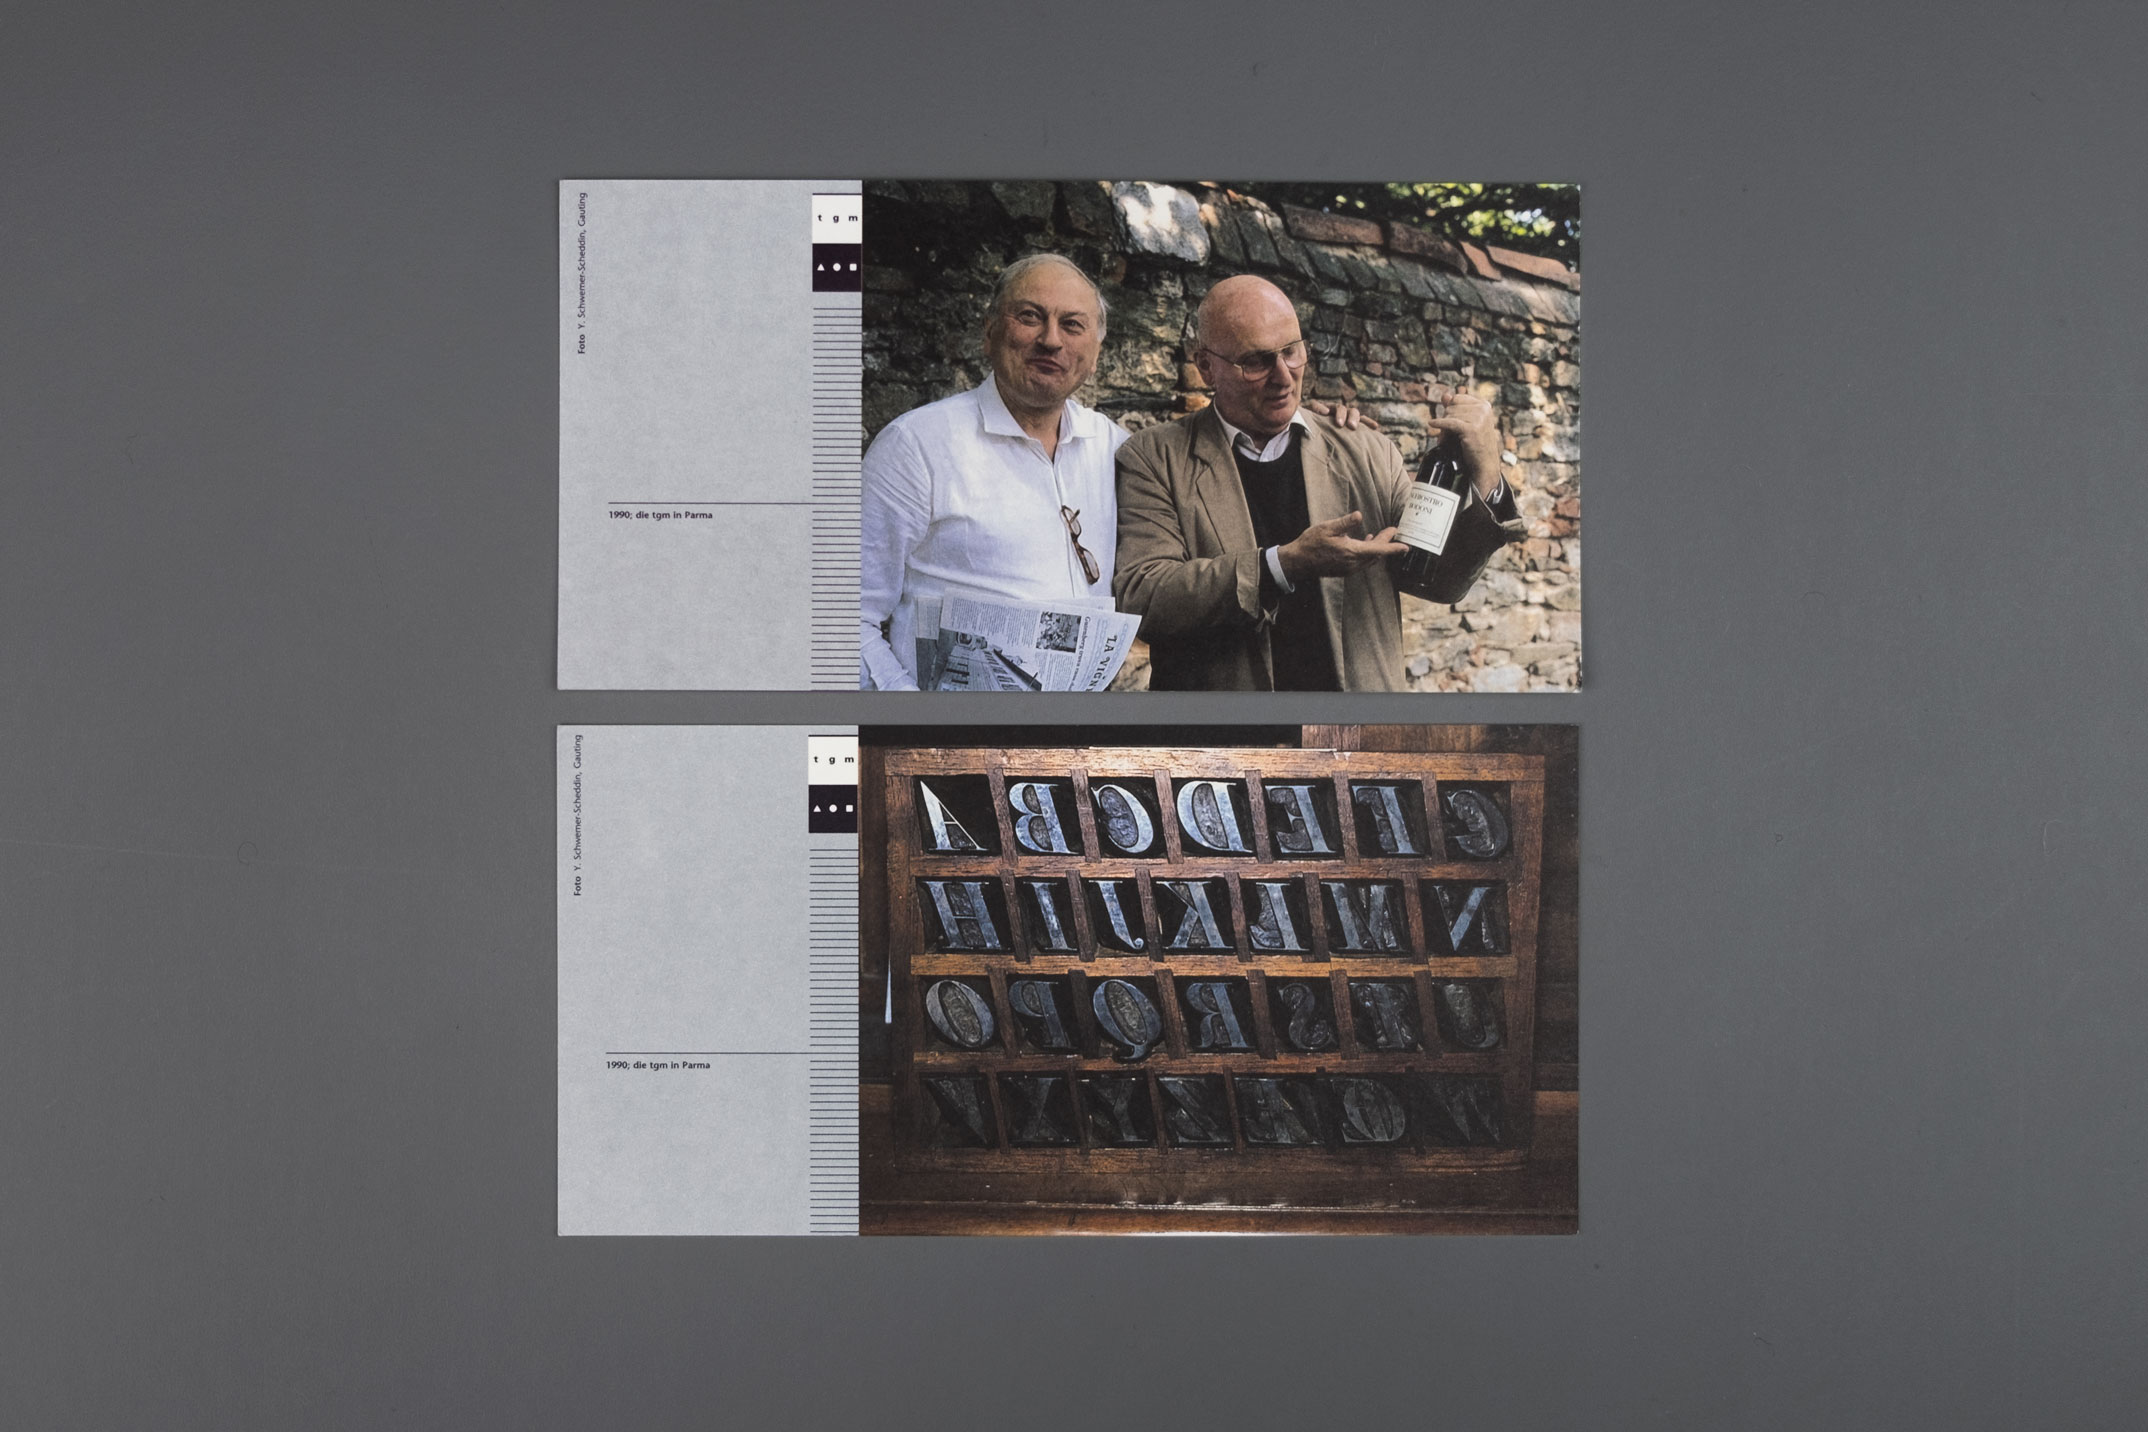 Veranstaltungskarten mit Motiven der Studienreisen und Günther Gerhard Lange, Jahresthema: Europäische Perspektiven, Typographische Gesellschaft München